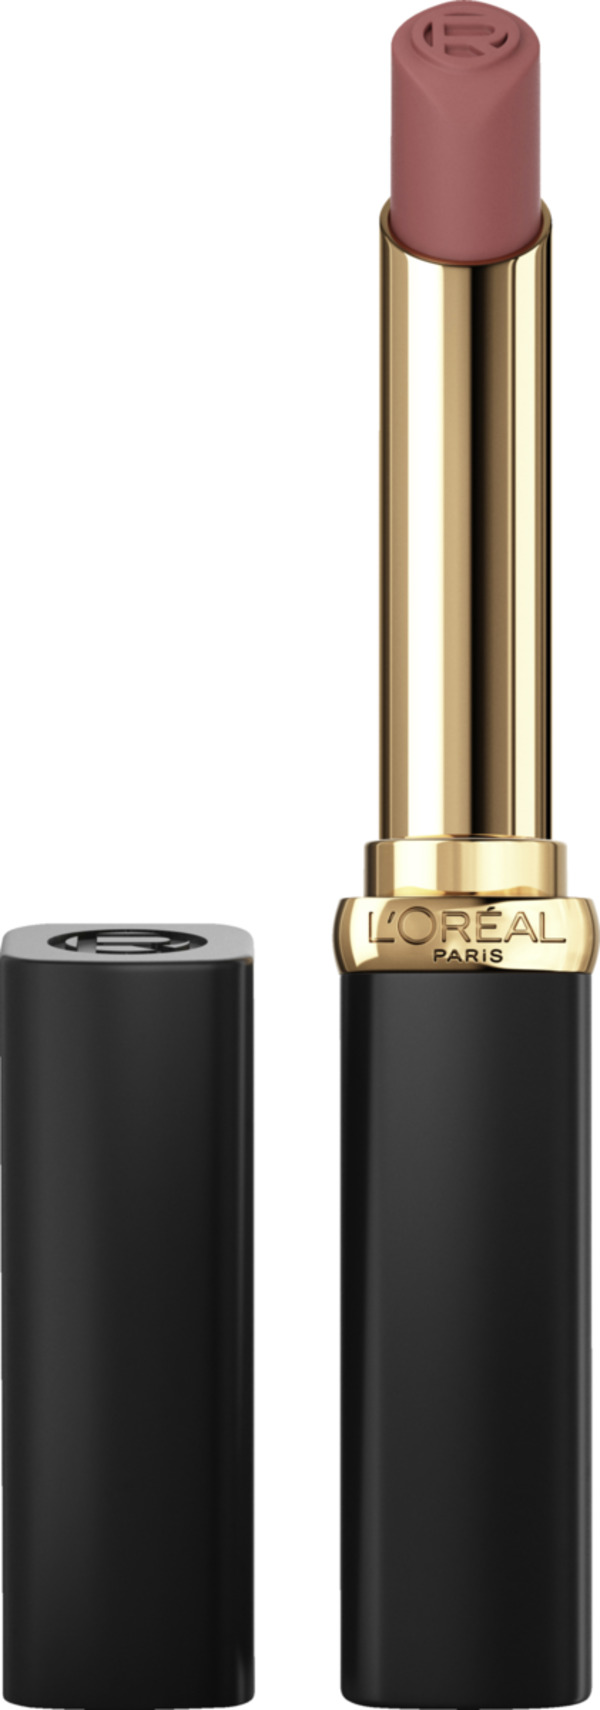 Bild 1 von L’Oréal Paris Color Riche Intense Volume Matte Nude 570 Worth It Intense